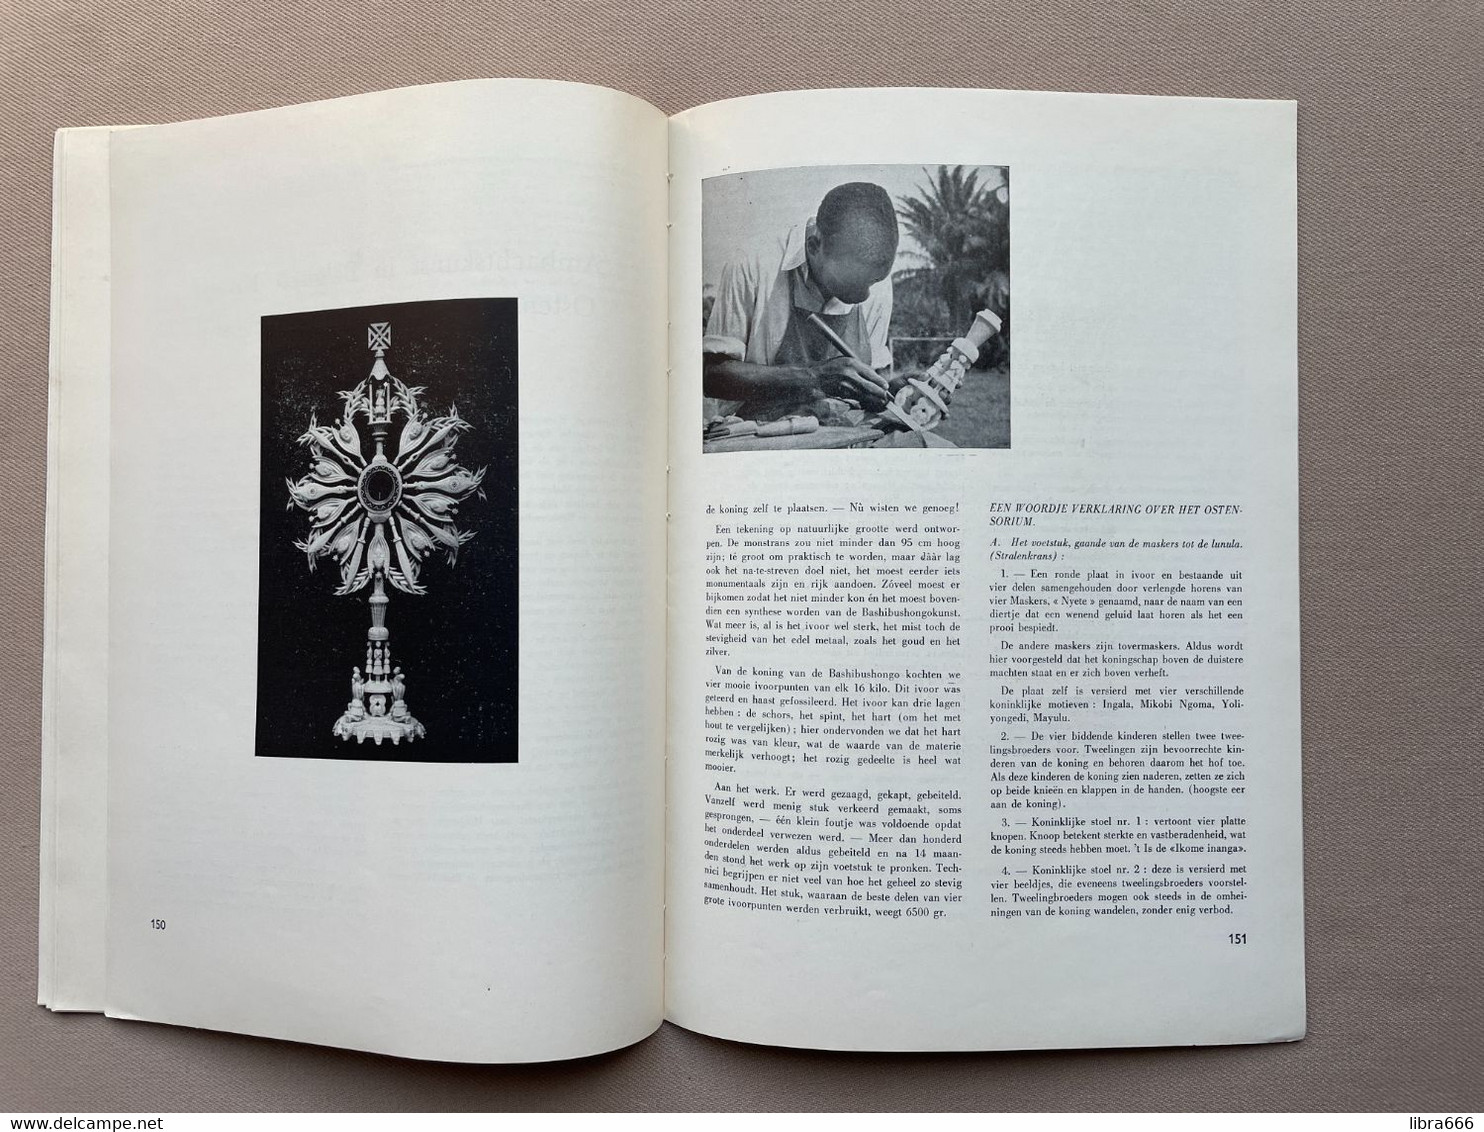 TIJDSCHRIFT van de MIDDENSTAND VAN BELGIË - DE KUNSTAMBACHTEN - 3delig 1958 - 158 blz. met omslag 29.5 x 21.5 cm.